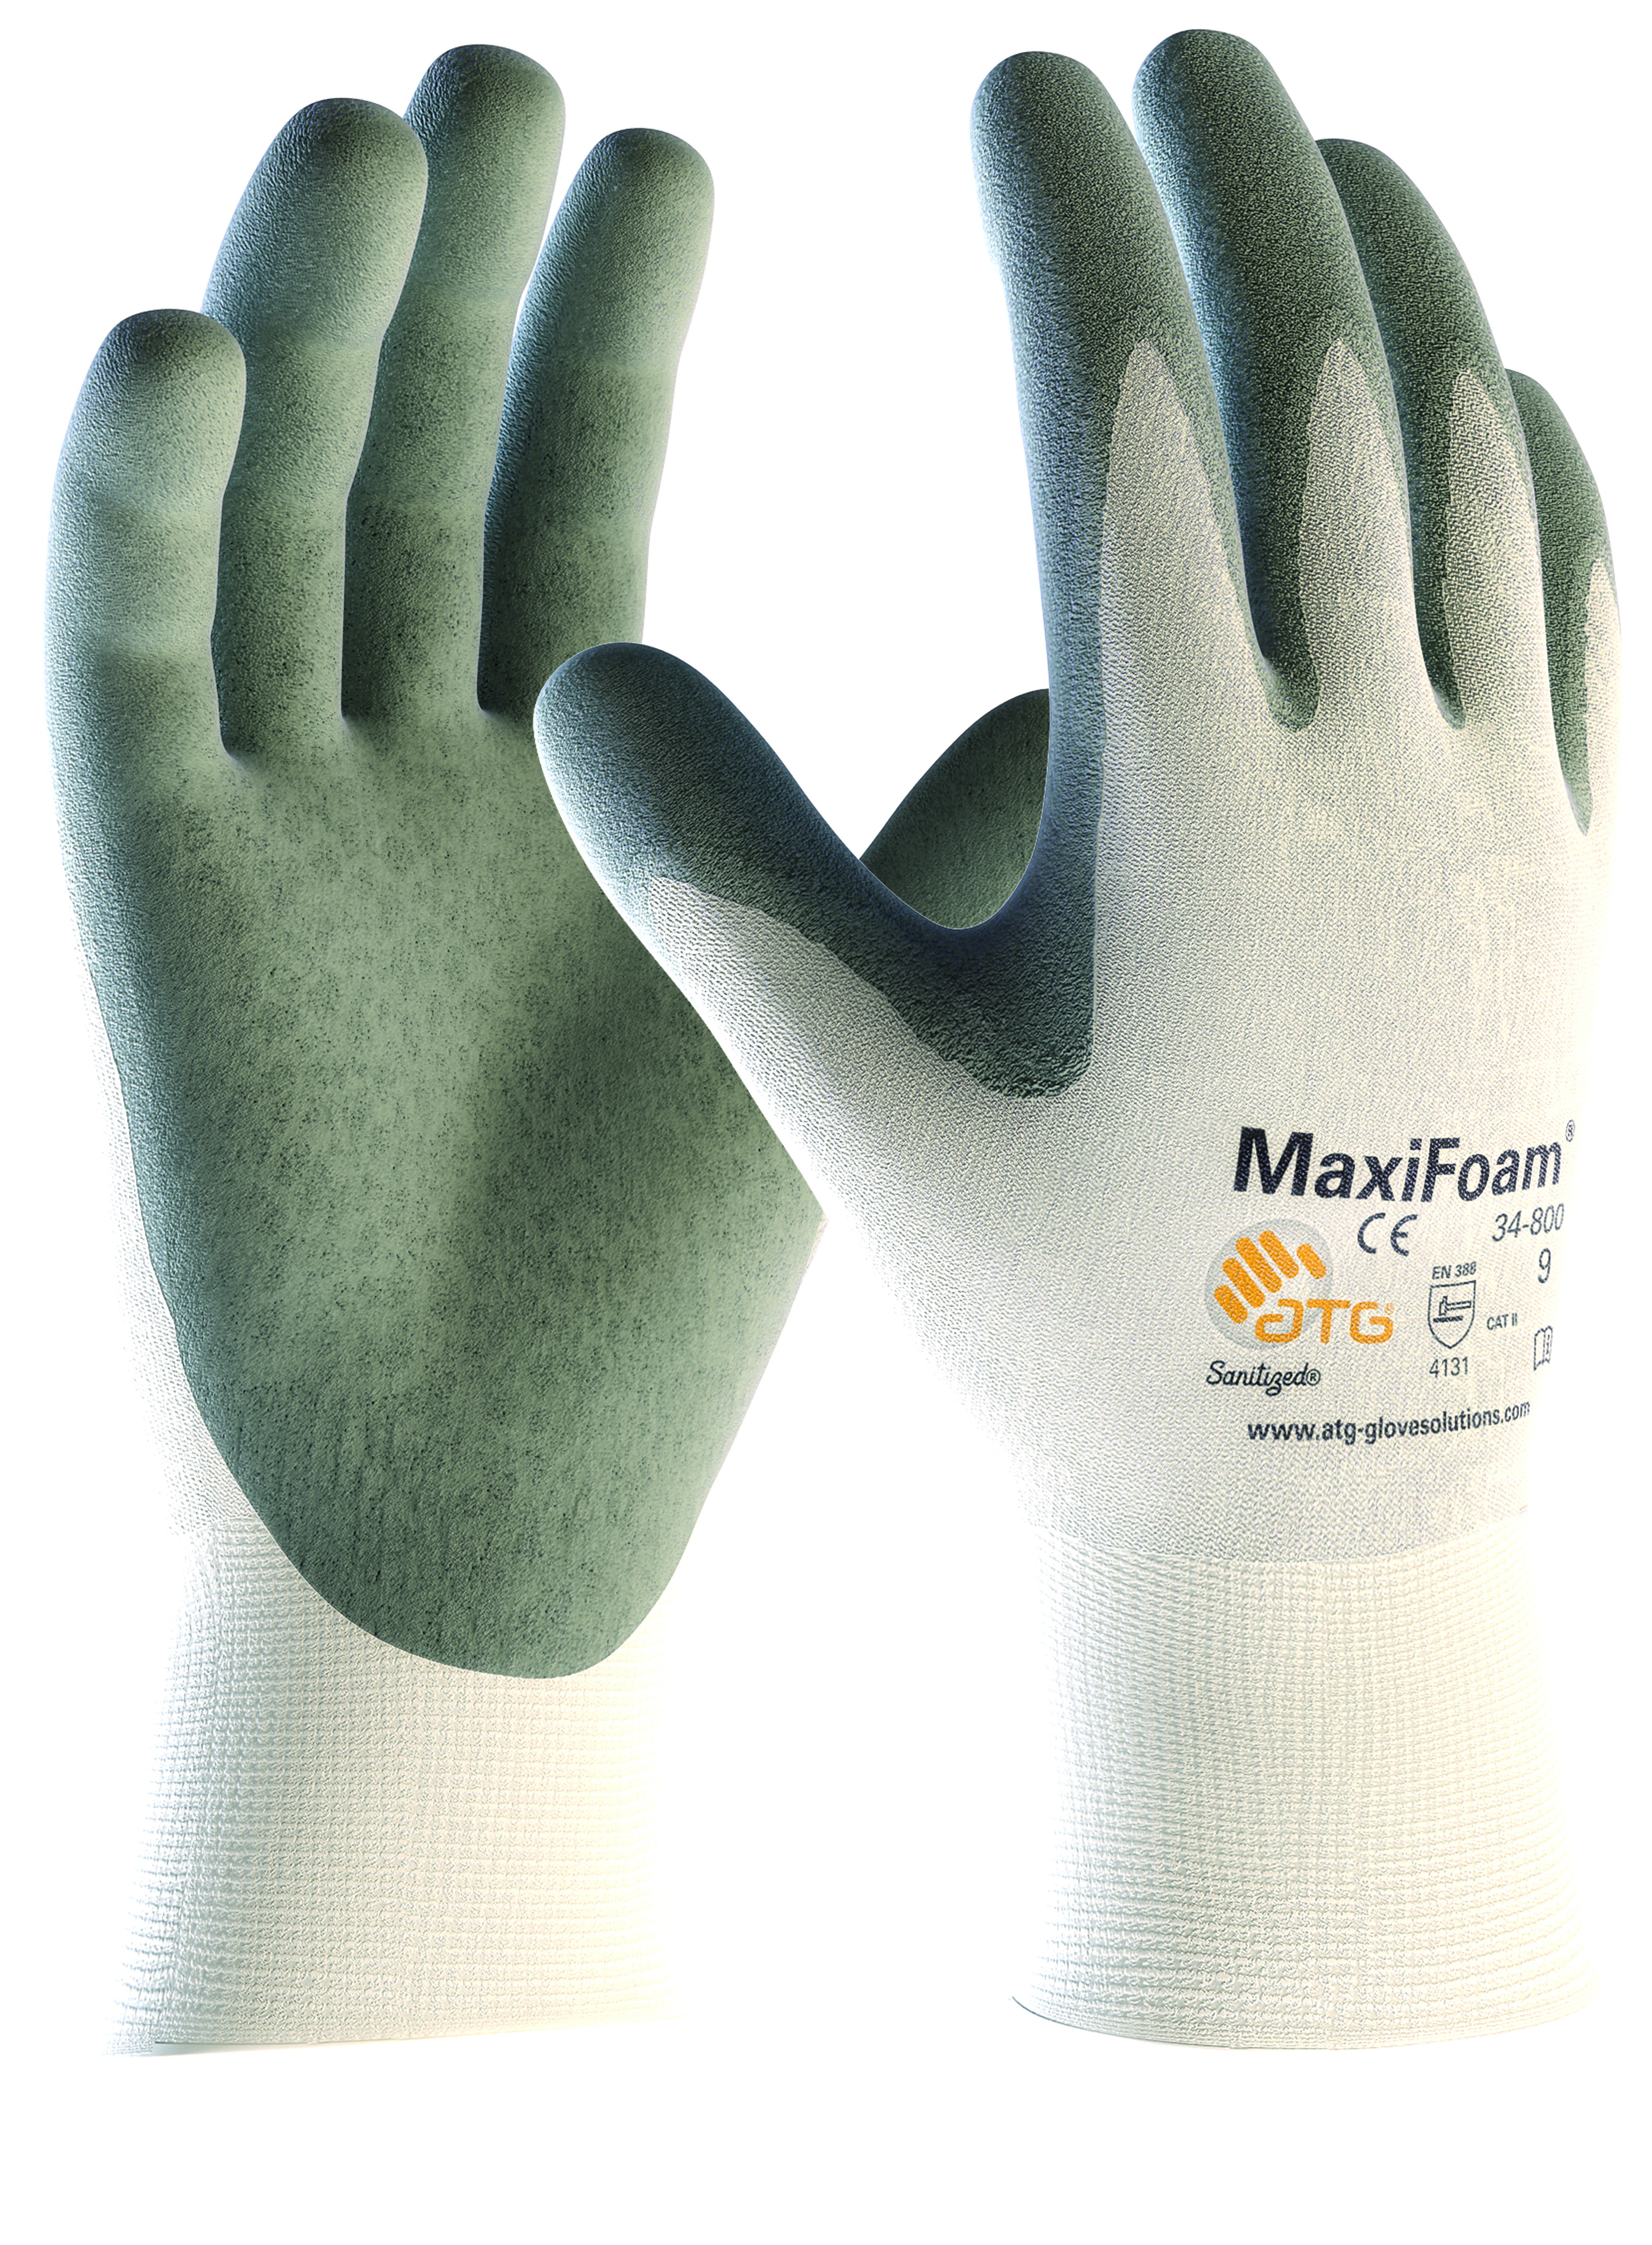 Handschoen ATG MaxiFoam 34-800